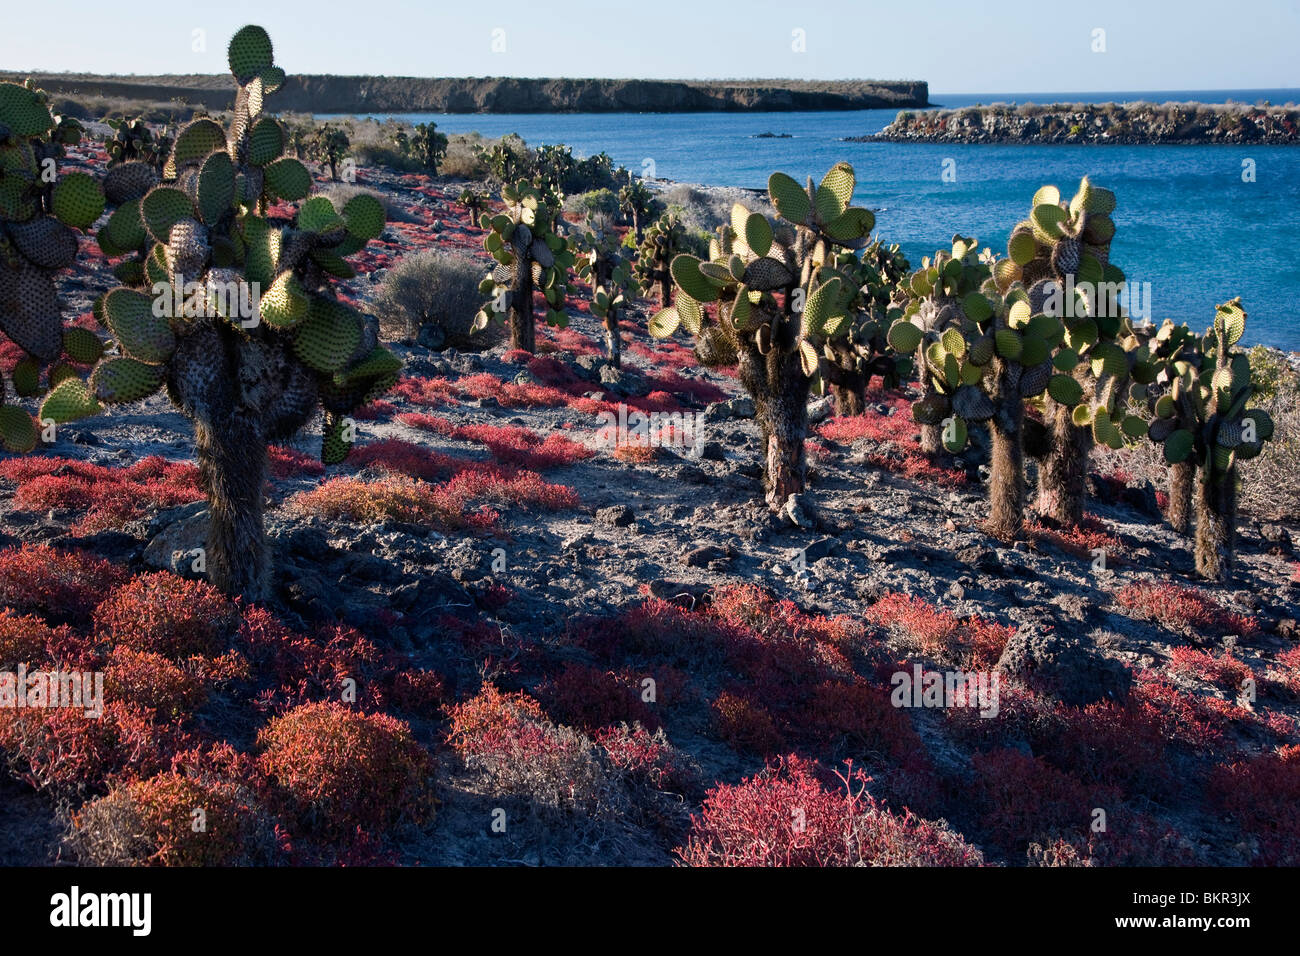 Galapagos-Inseln, riesige Kakteen Bäume und rote Sesuvium wachsen auf der sonst kargen Insel South Plaza. Stockfoto